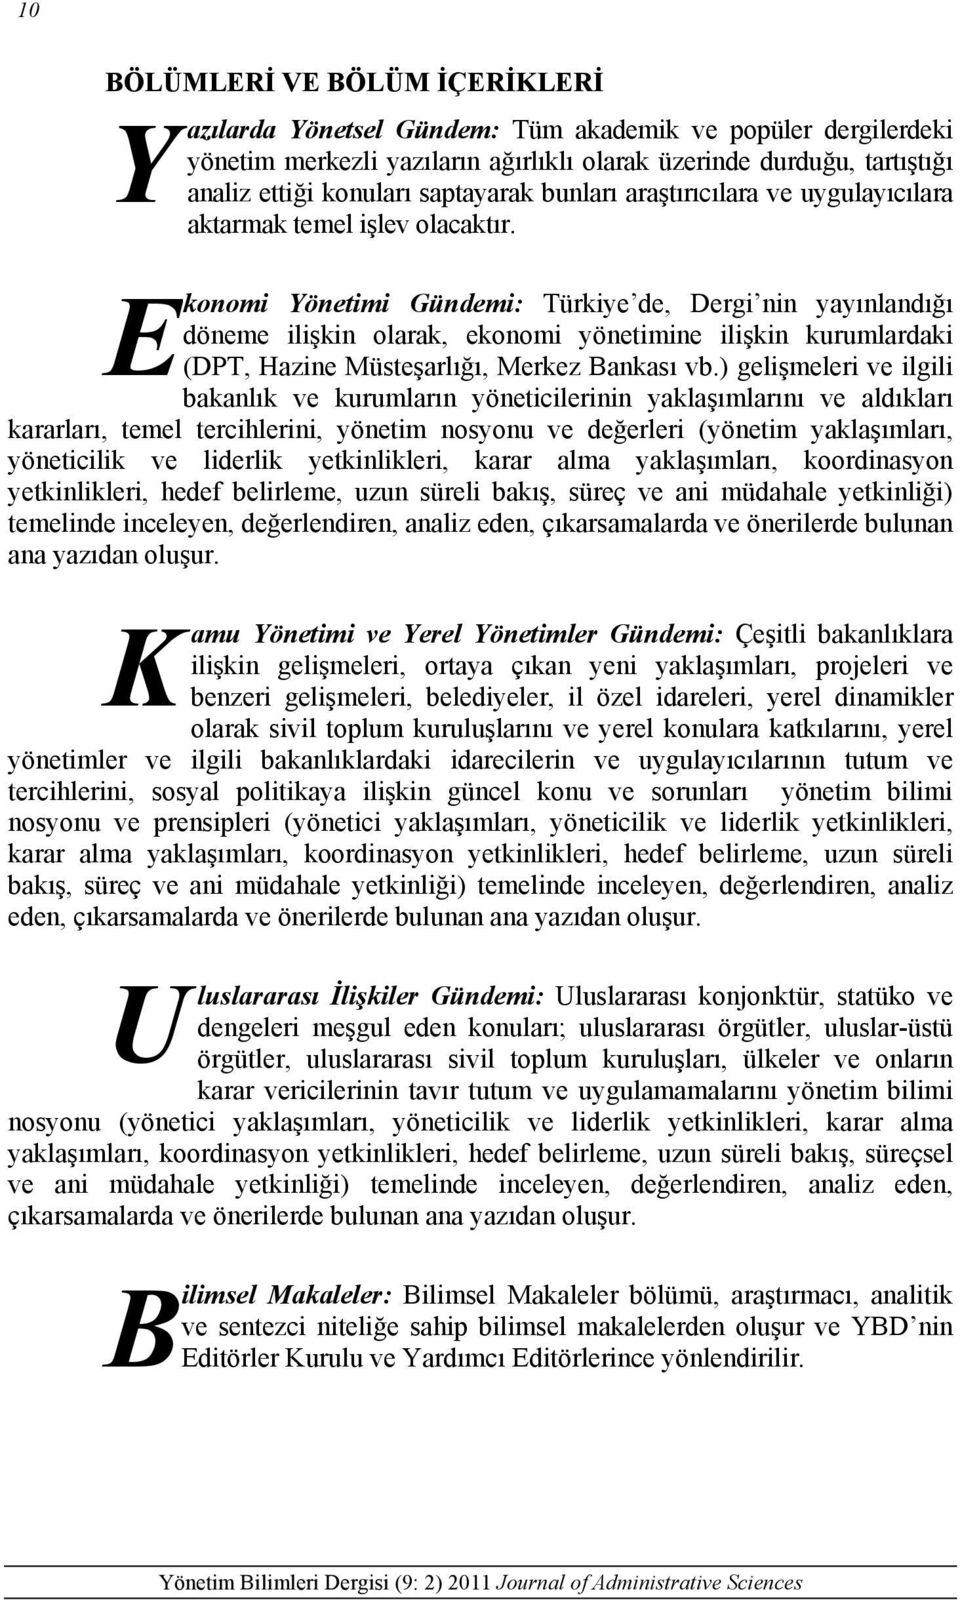 E konomi Yönetimi Gündemi: Türkiye de, Dergi nin yayınlandığı döneme ilişkin olarak, ekonomi yönetimine ilişkin kurumlardaki (DPT, Hazine Müsteşarlığı, Merkez Bankası vb.